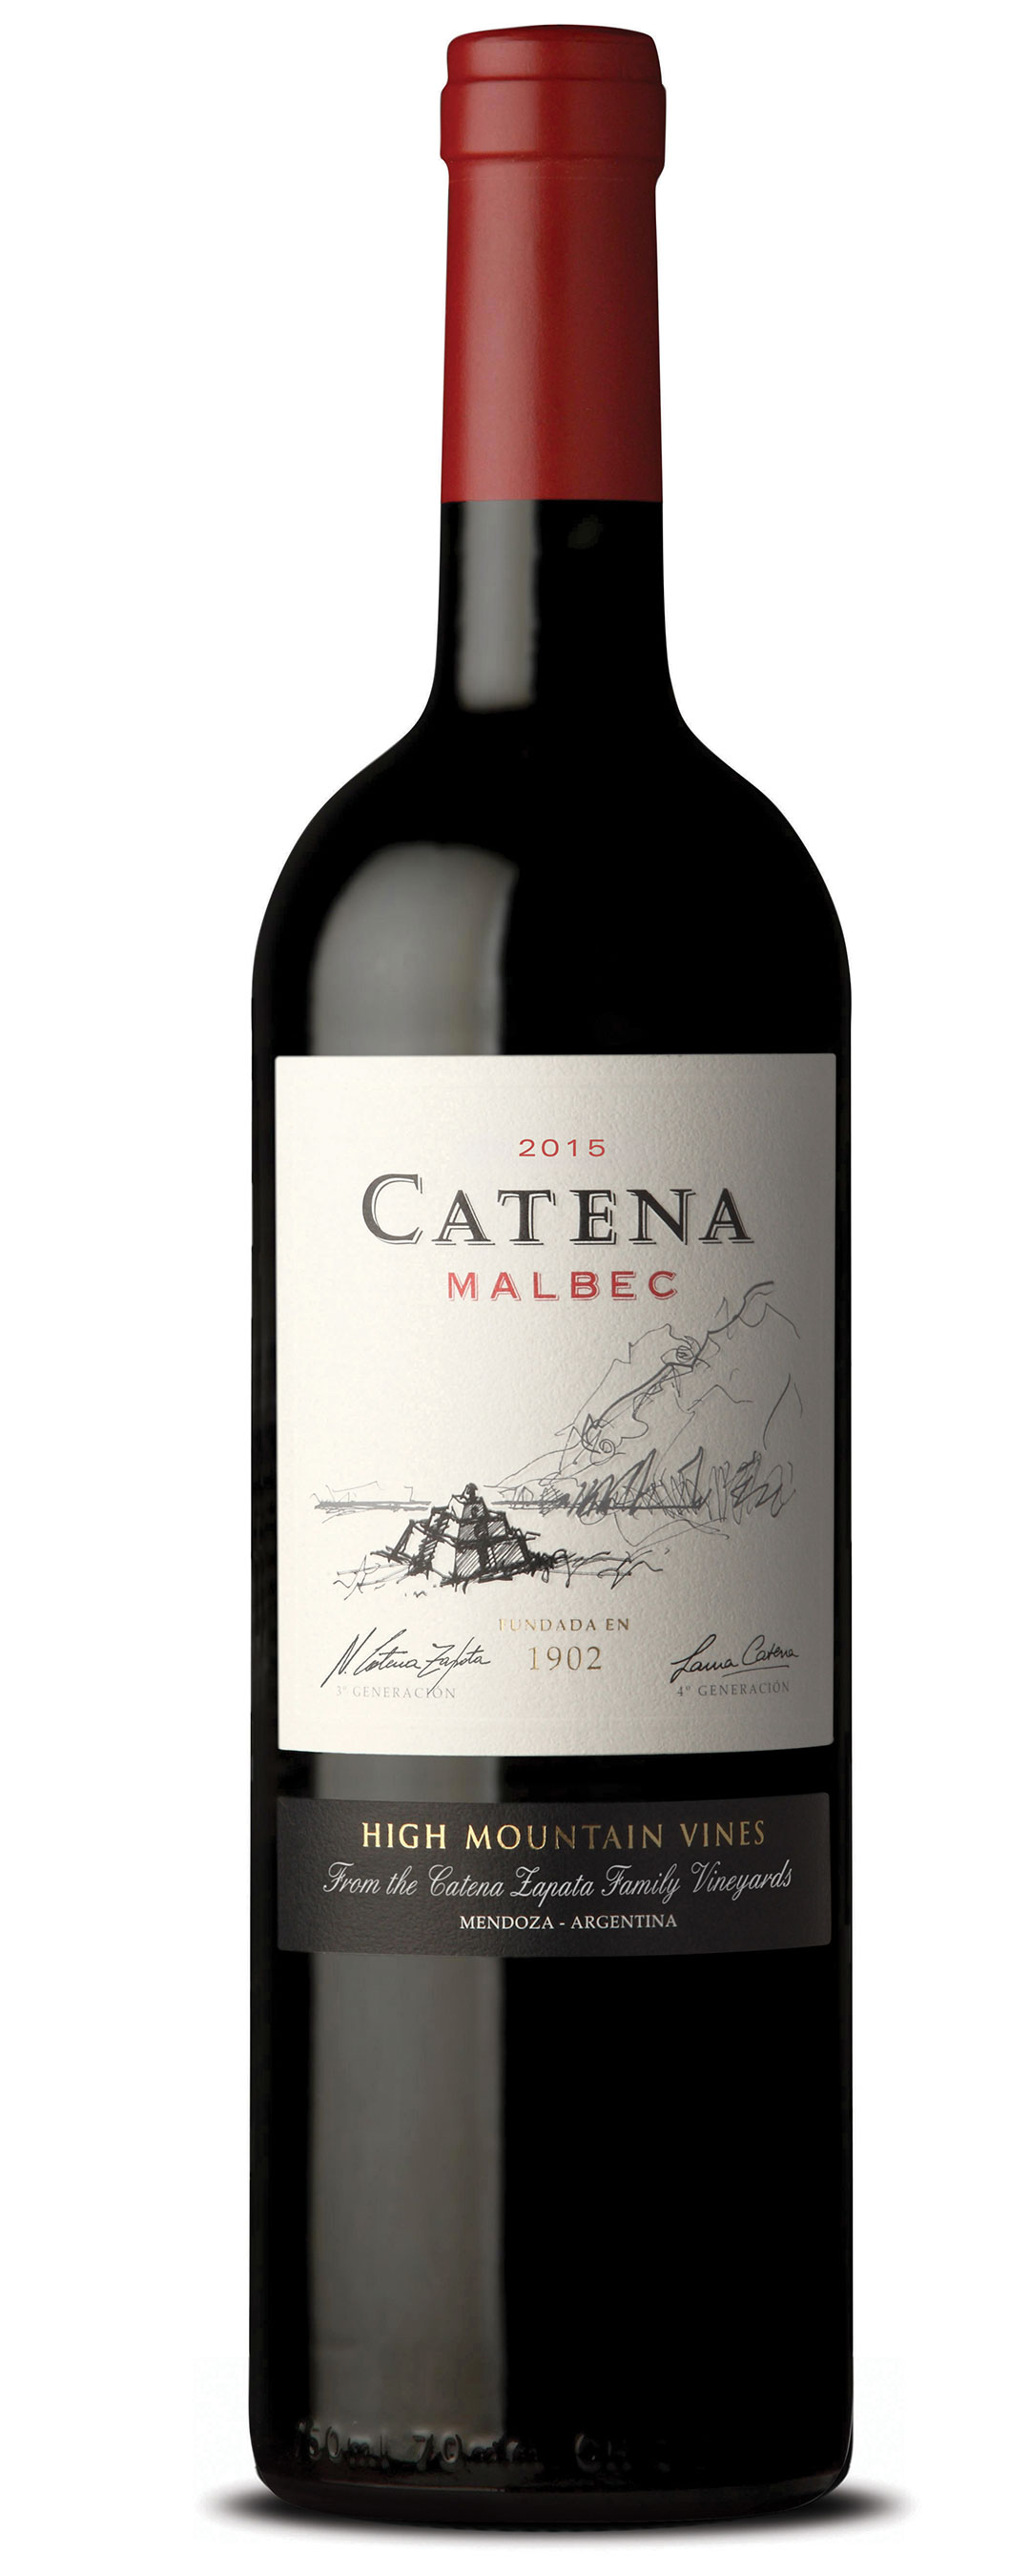 2017 Catena Malbec High Mountain Vines Mendoza image